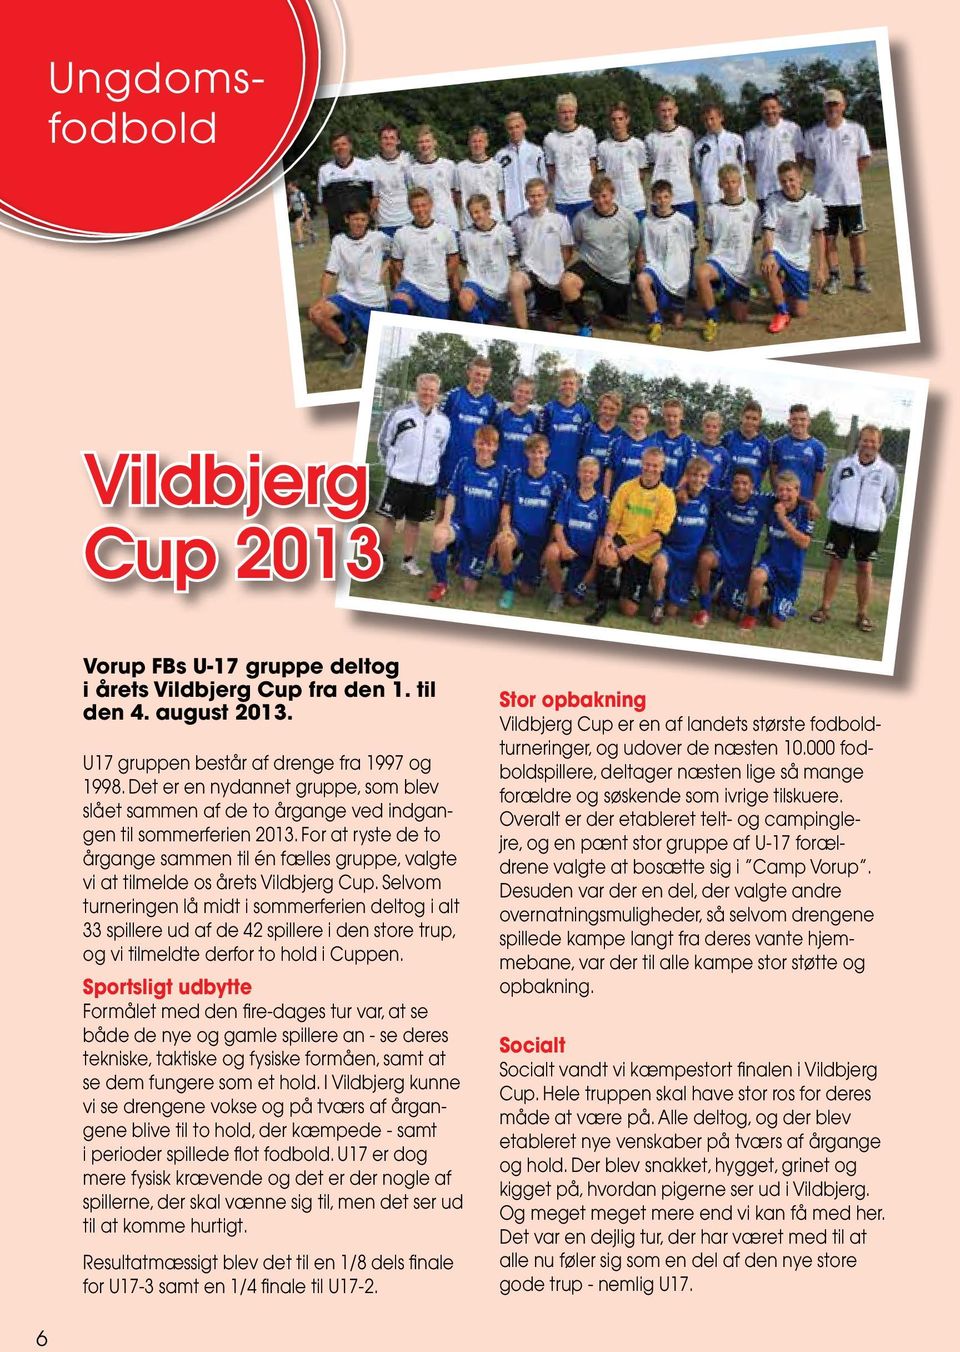 For at ryste de to årgange sammen til én fælles gruppe, valgte vi at tilmelde os årets Vildbjerg Cup.